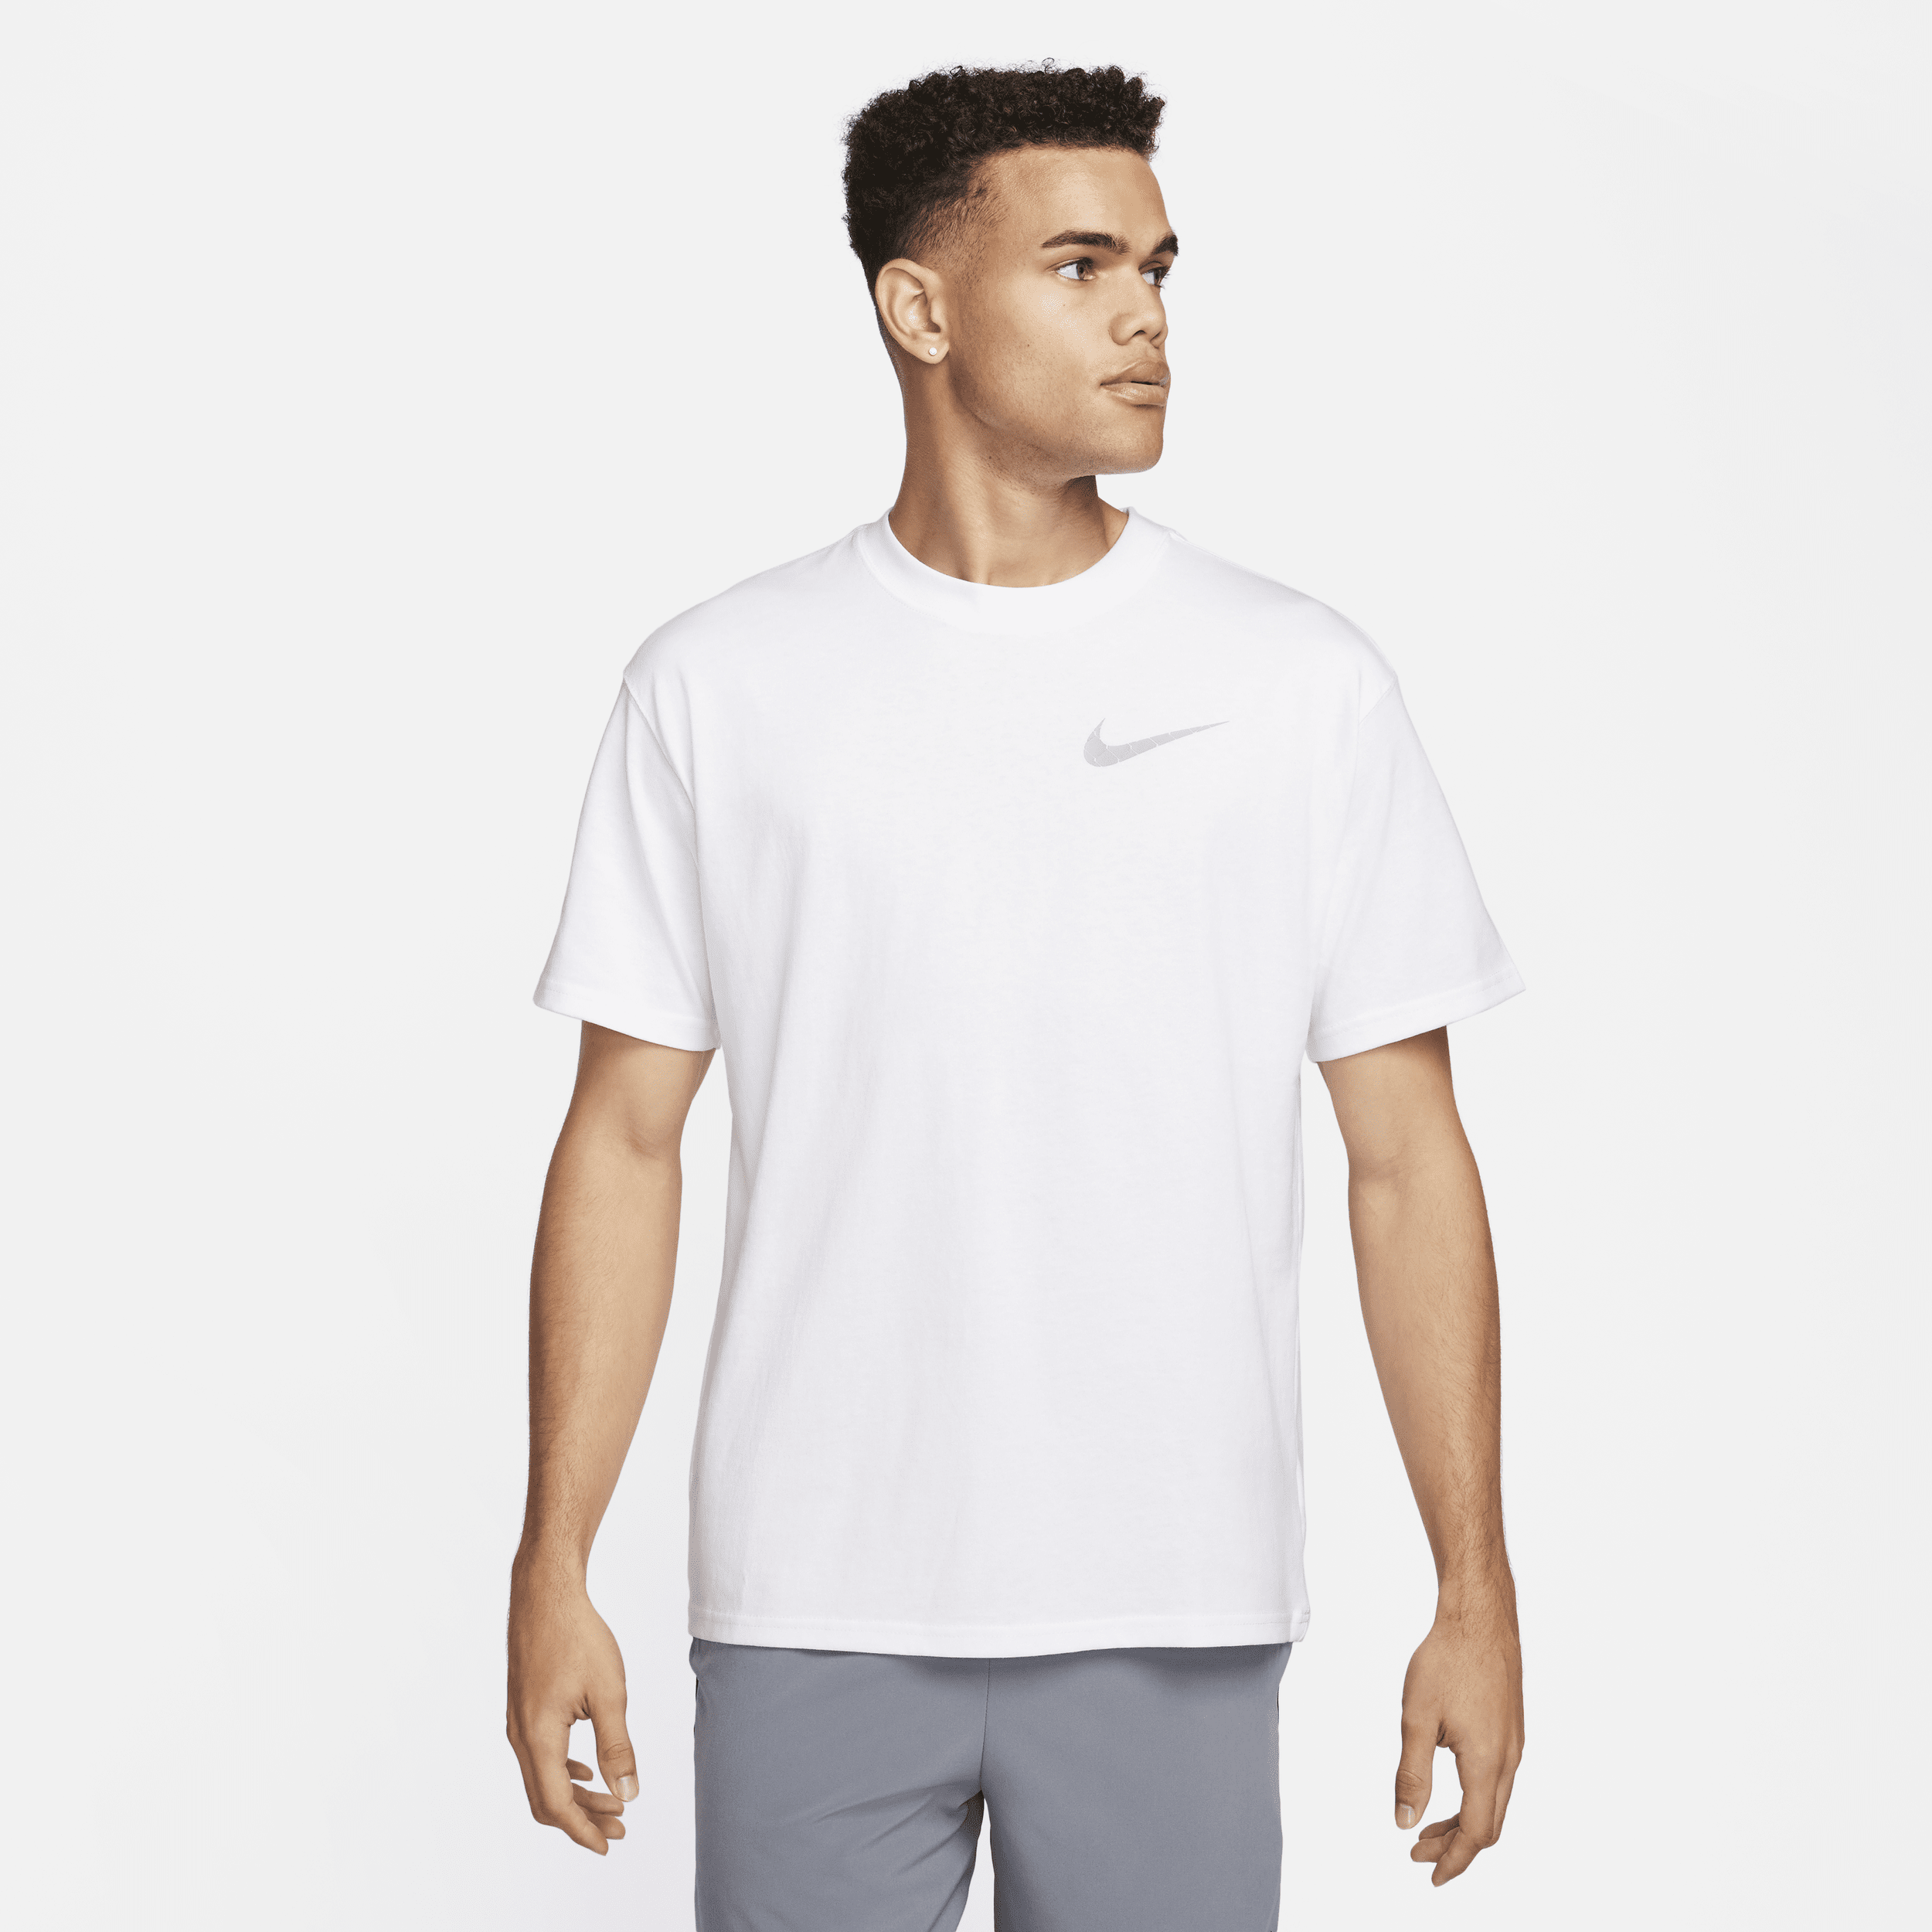 Nike Max90-basketball-T-shirt til mænd - hvid